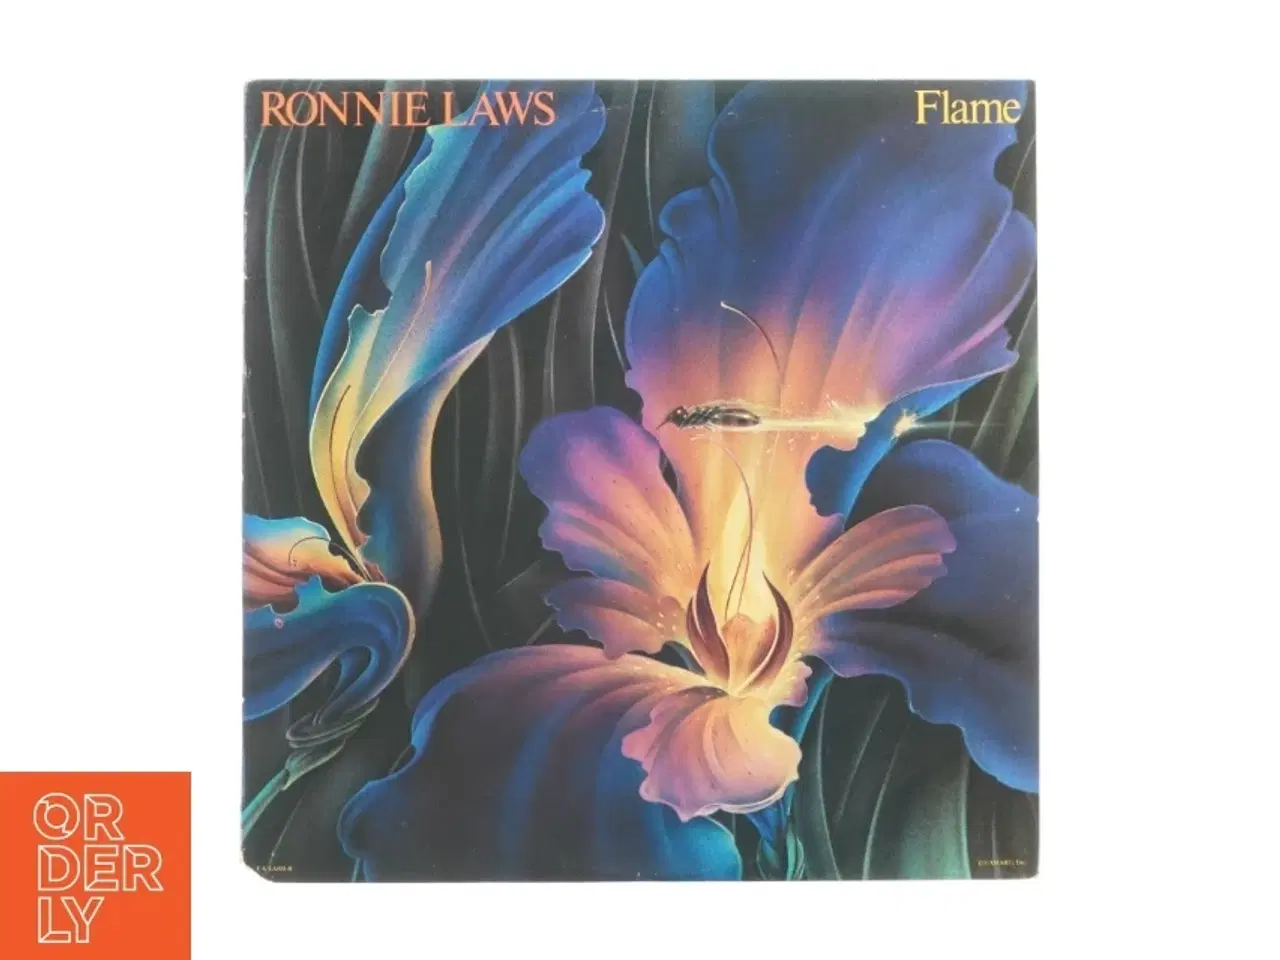 Billede 1 - Flame af Ronnie Laws fra LP